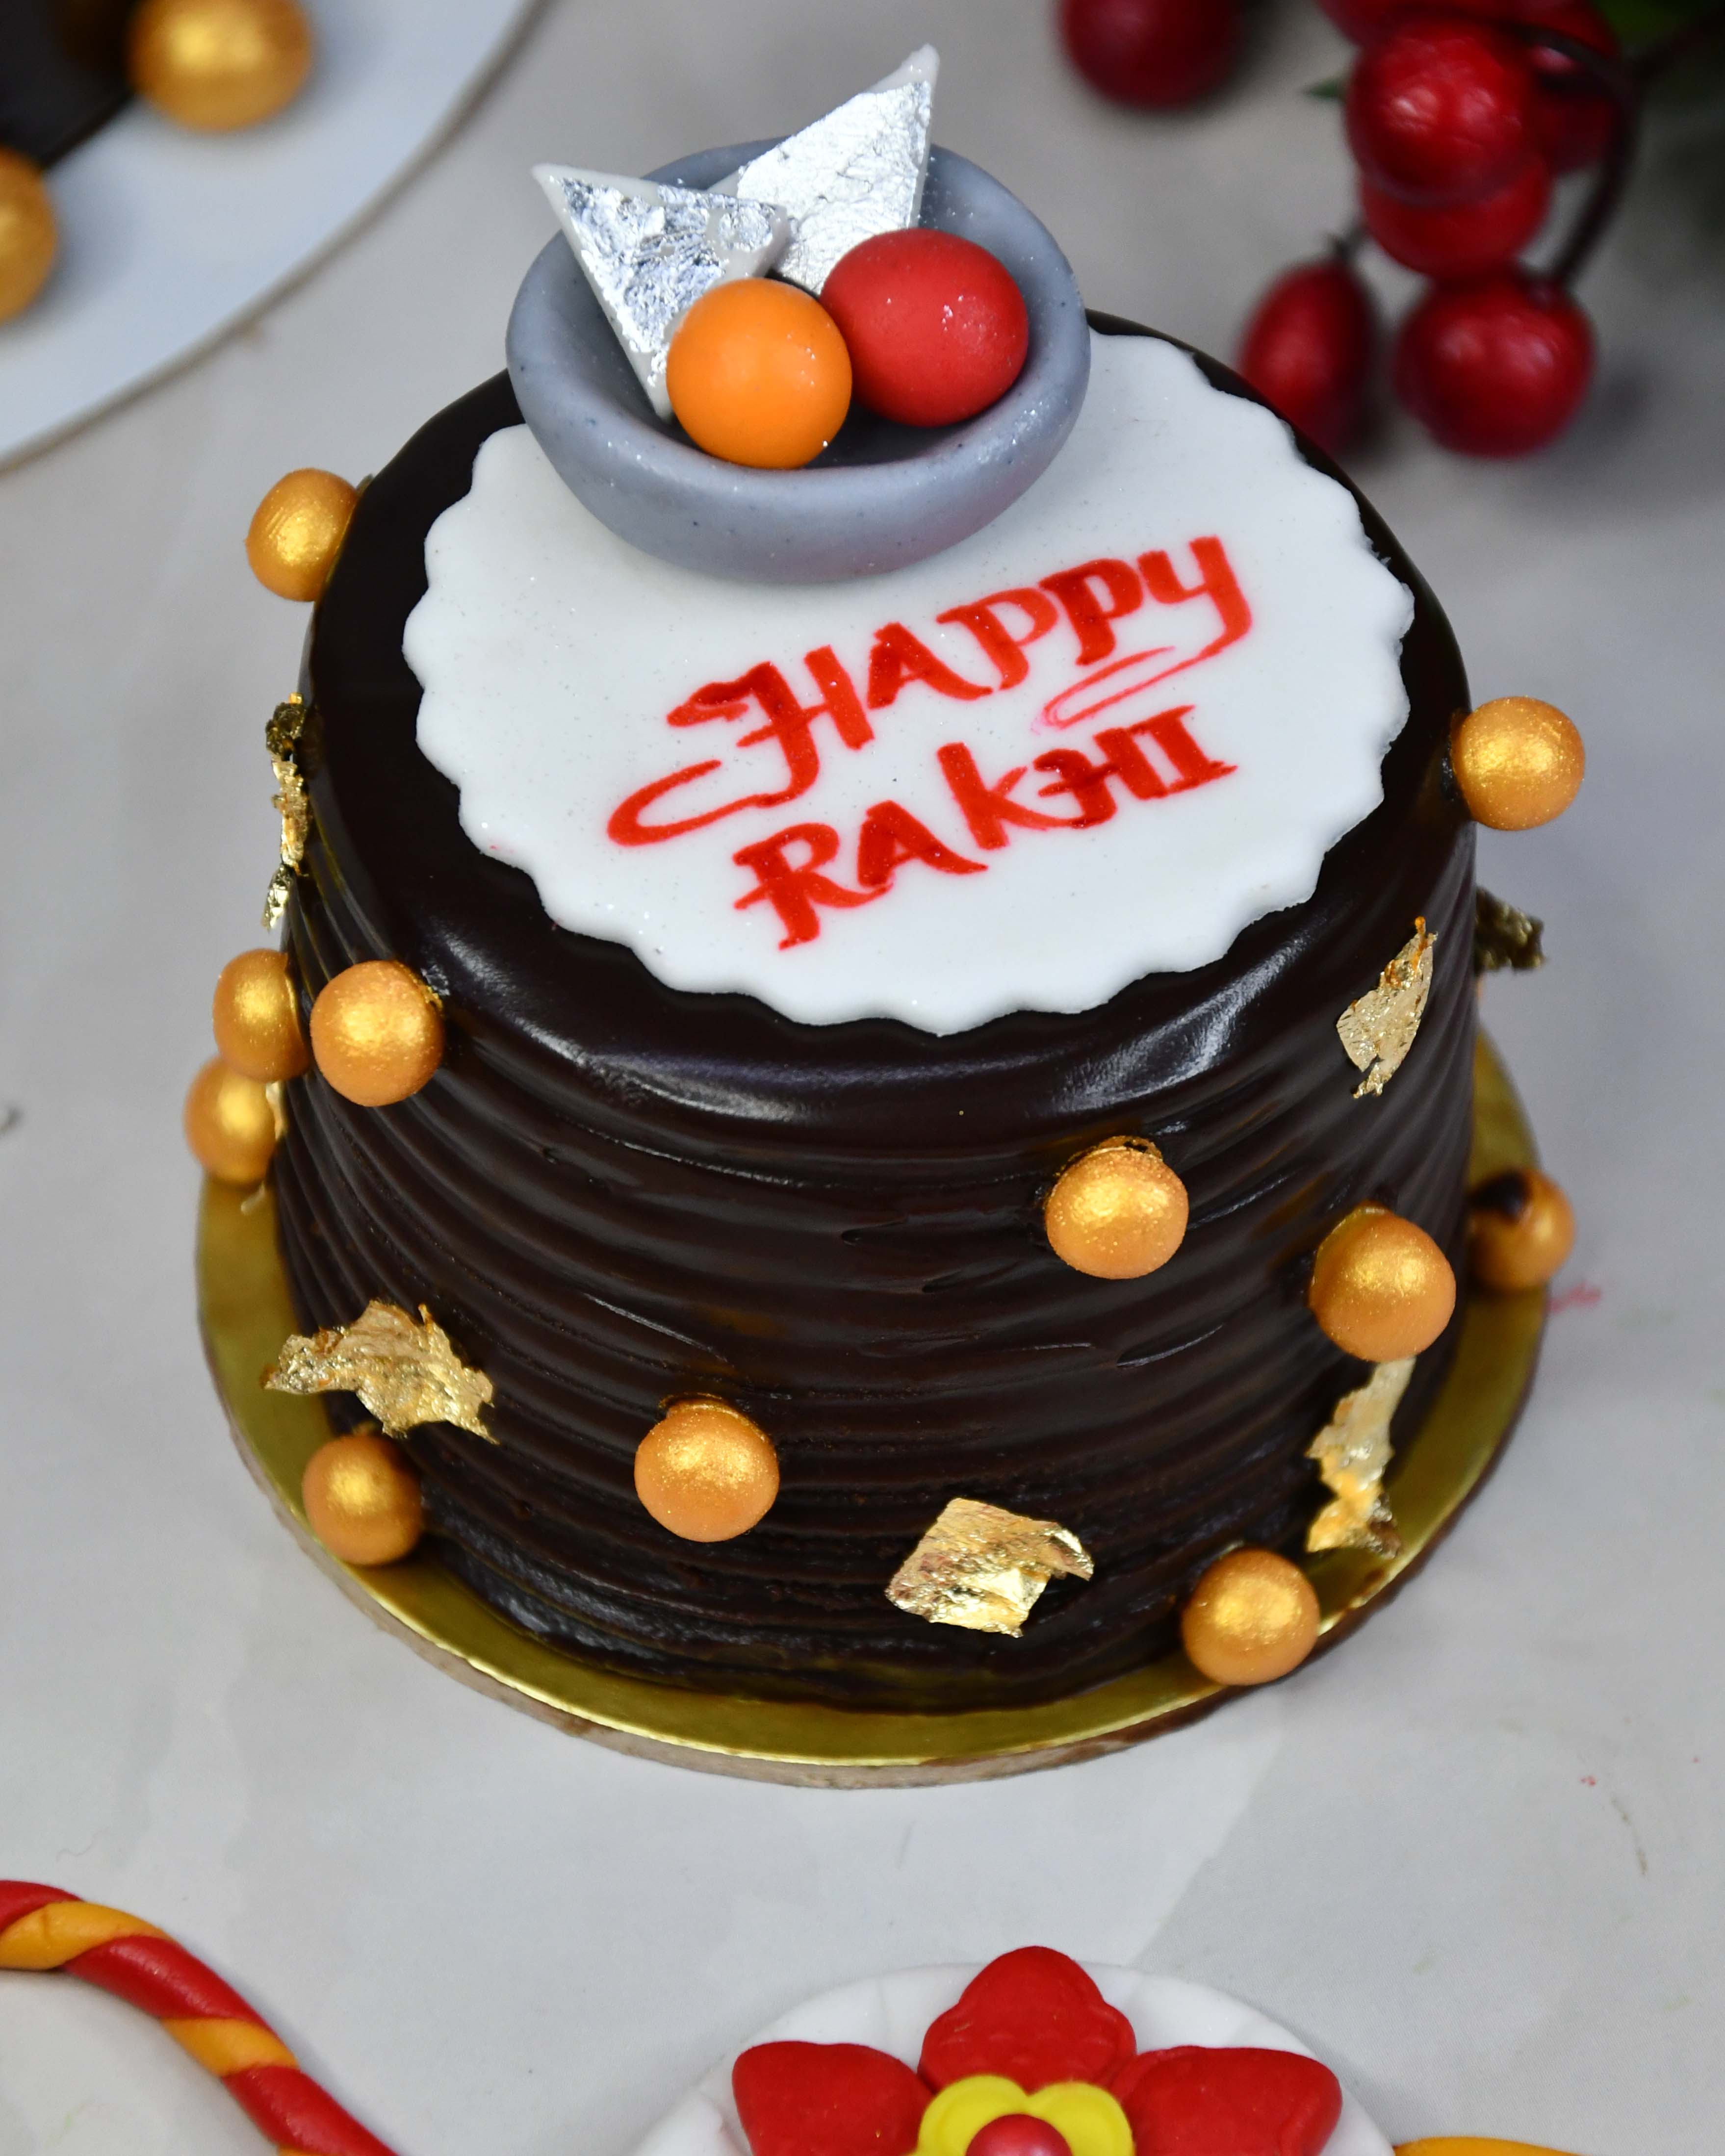 Special Rakhi Cake